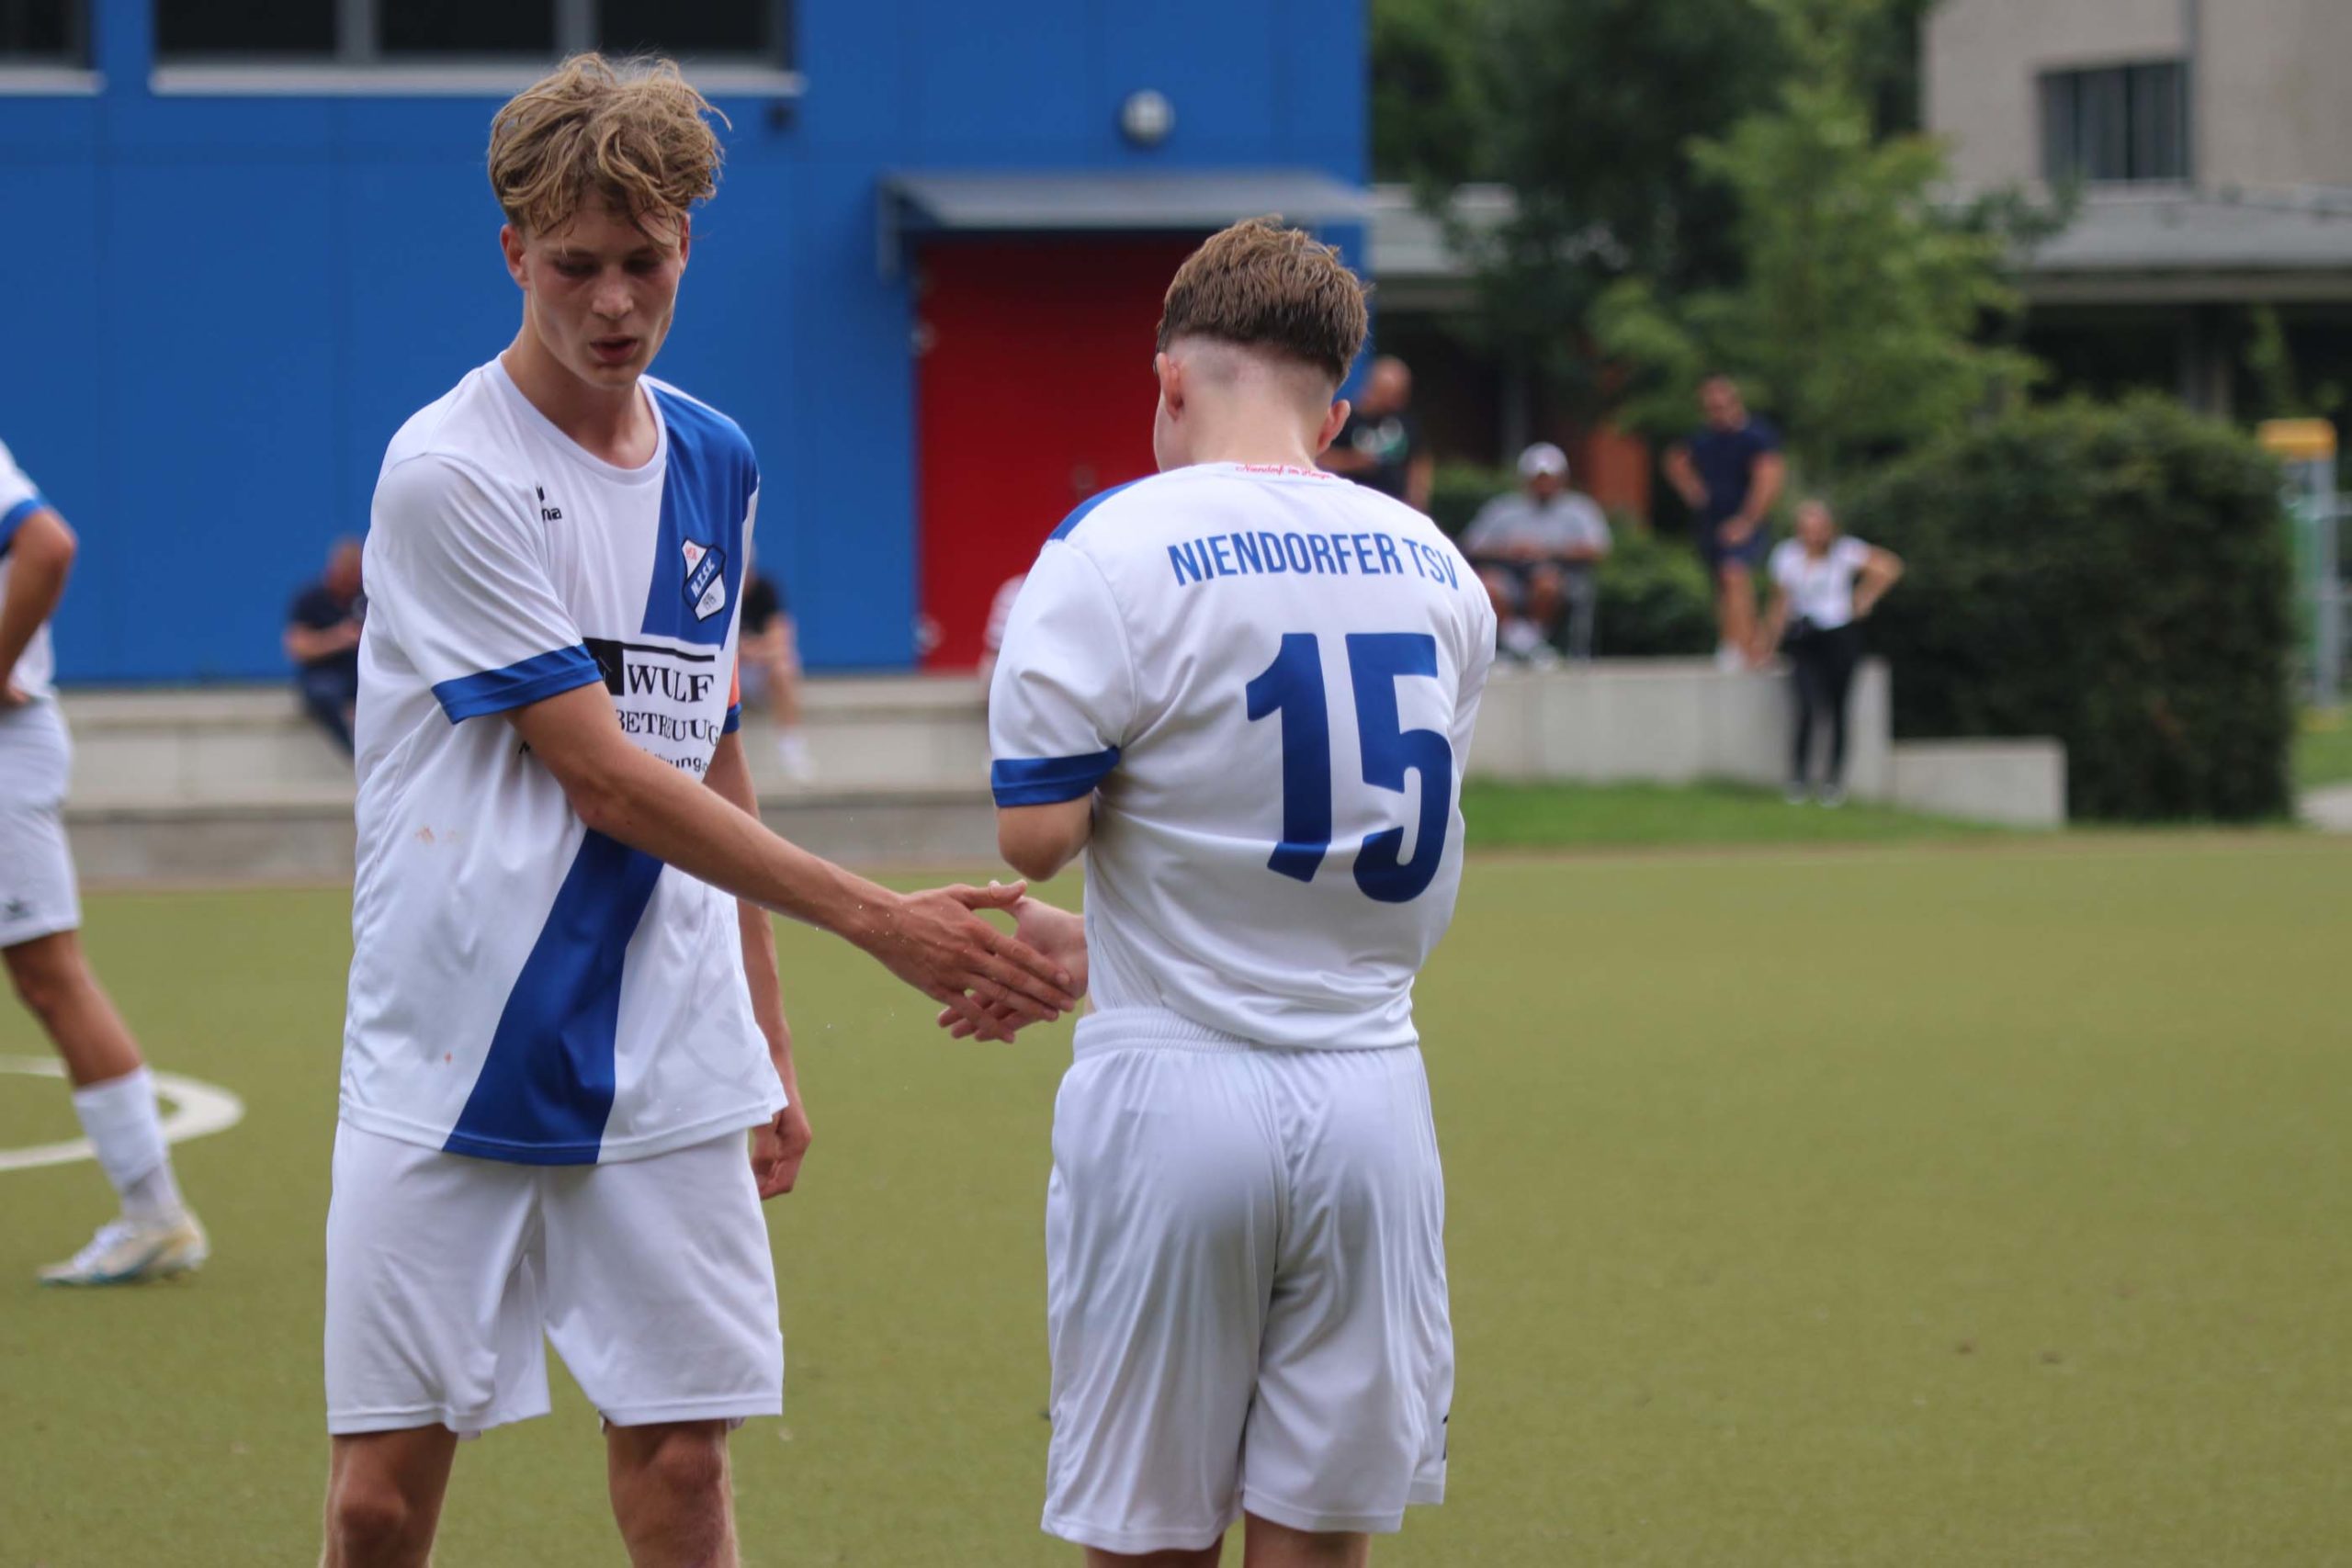 Zwei Spieler von der U17 des Niendorfer TSV klatschen miteinander ab.